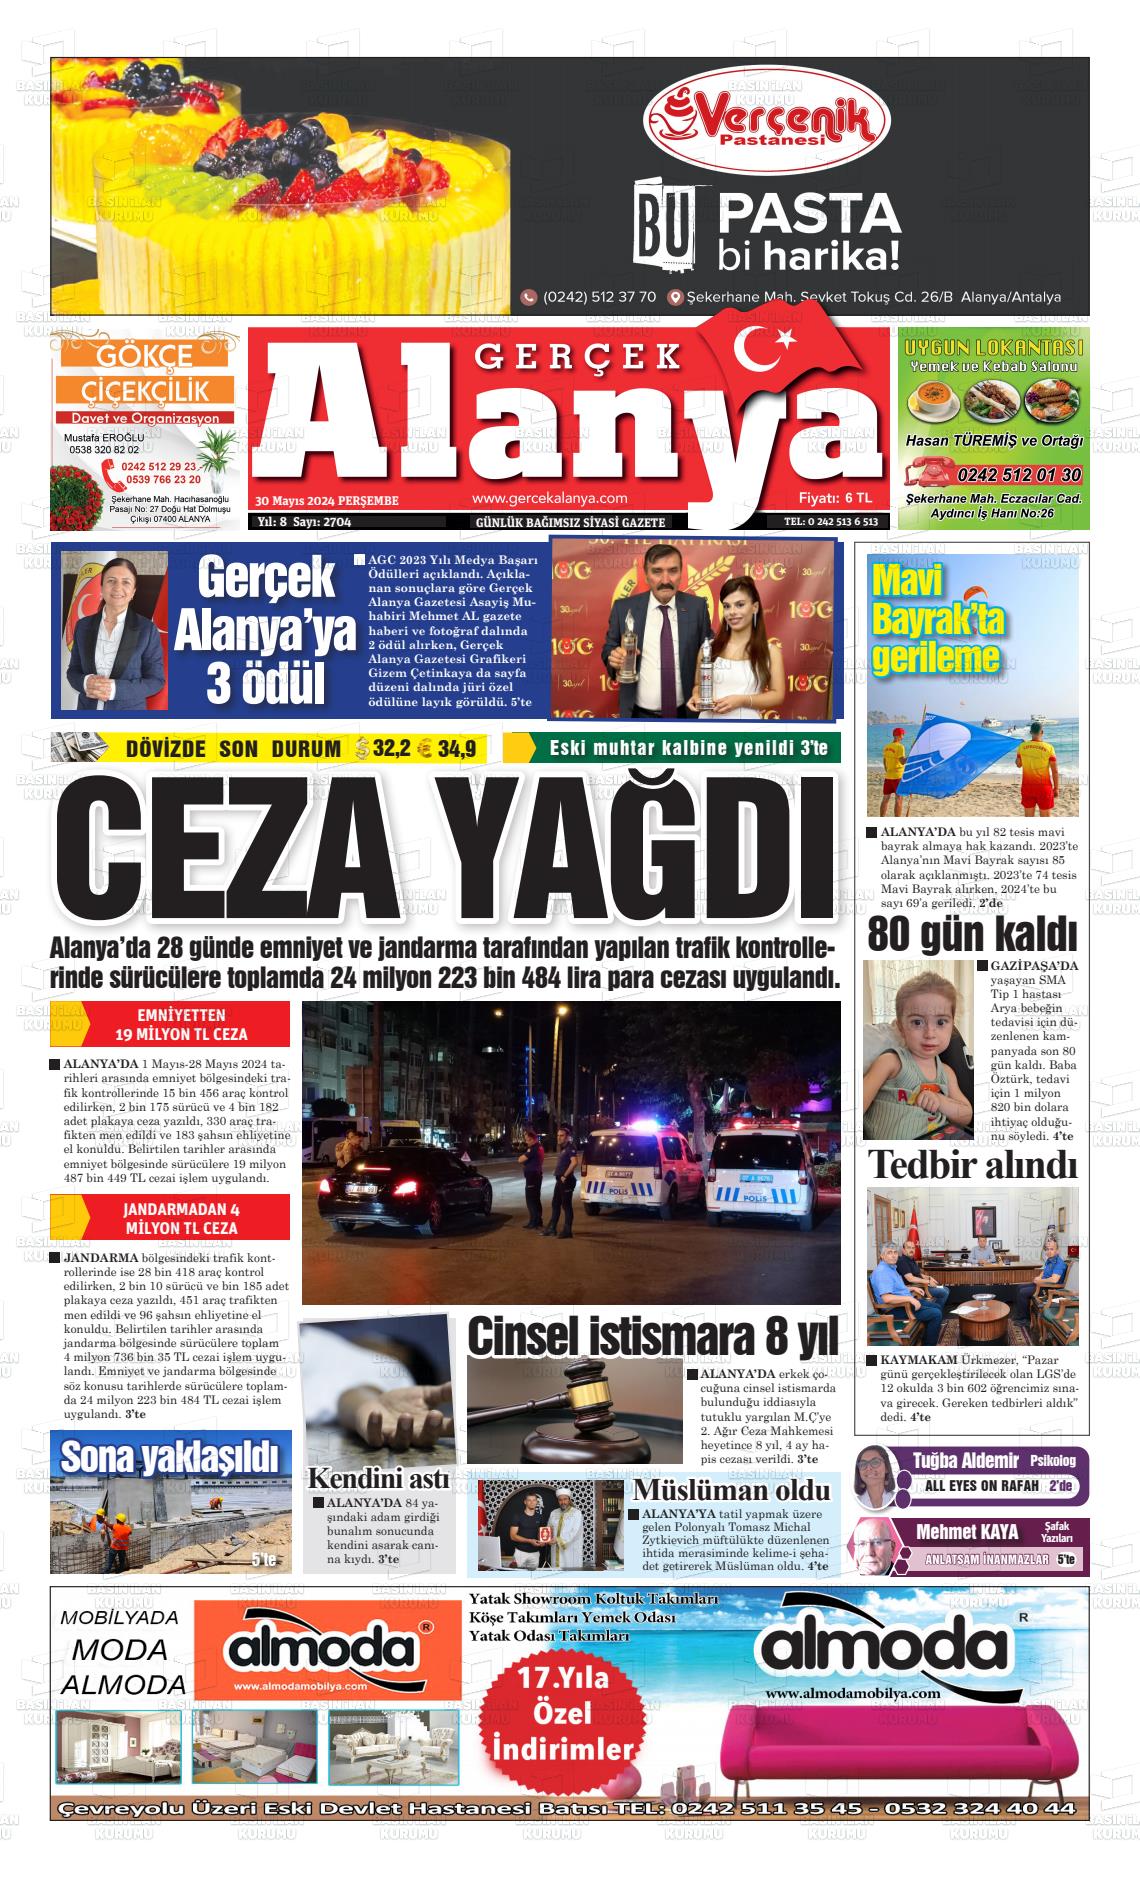 GERÇEK ALANYA Gazetesi